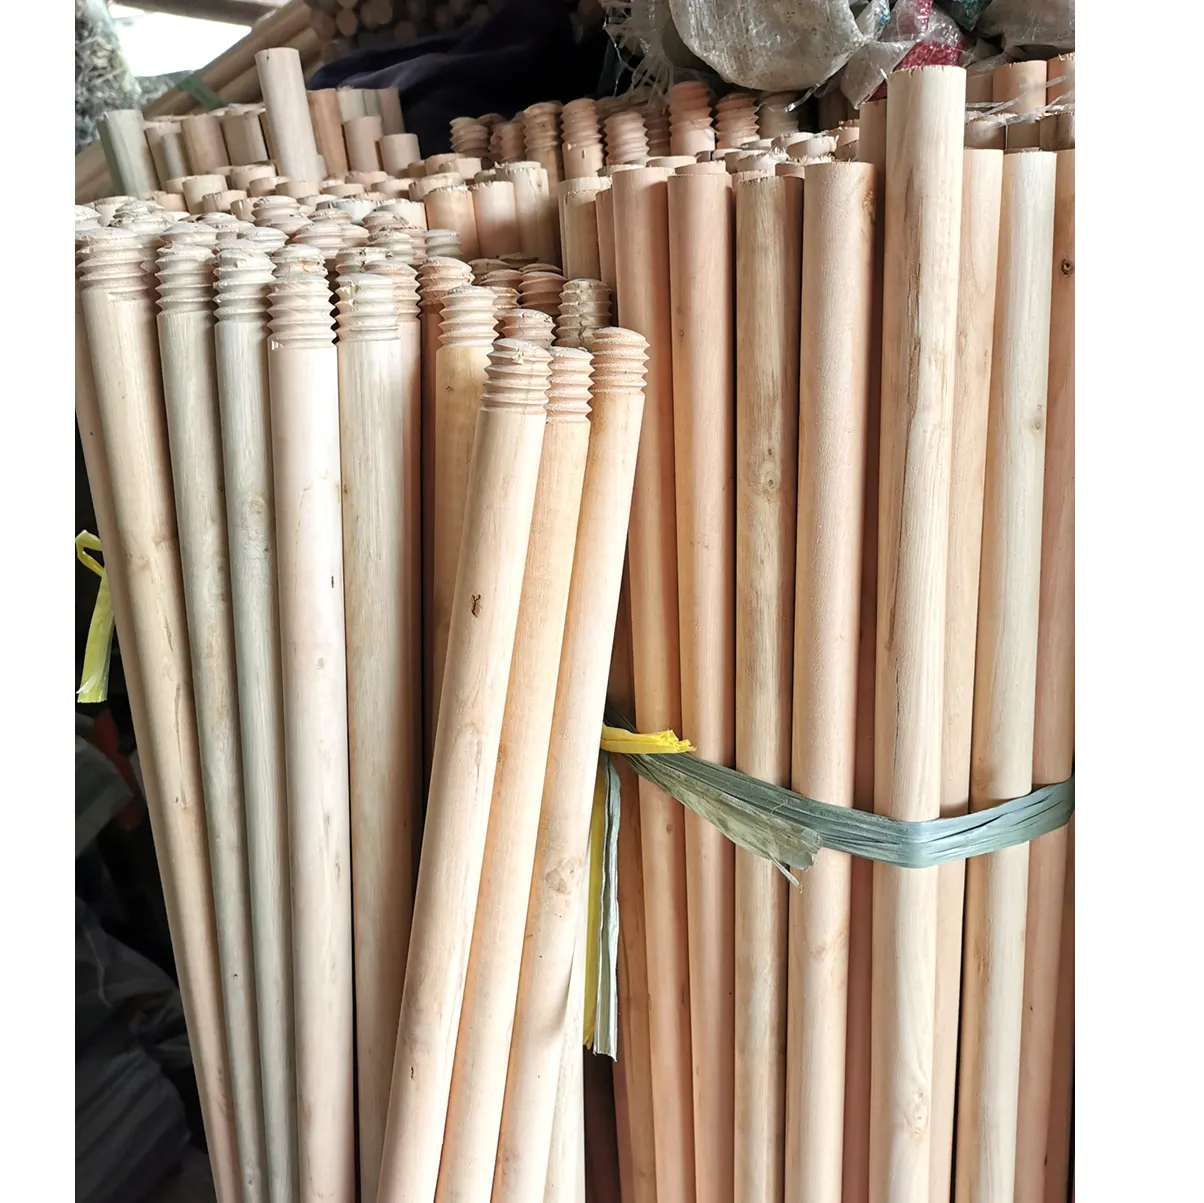 China atacado esfregão de madeira alças lote de madeira vassoura vara para aréia